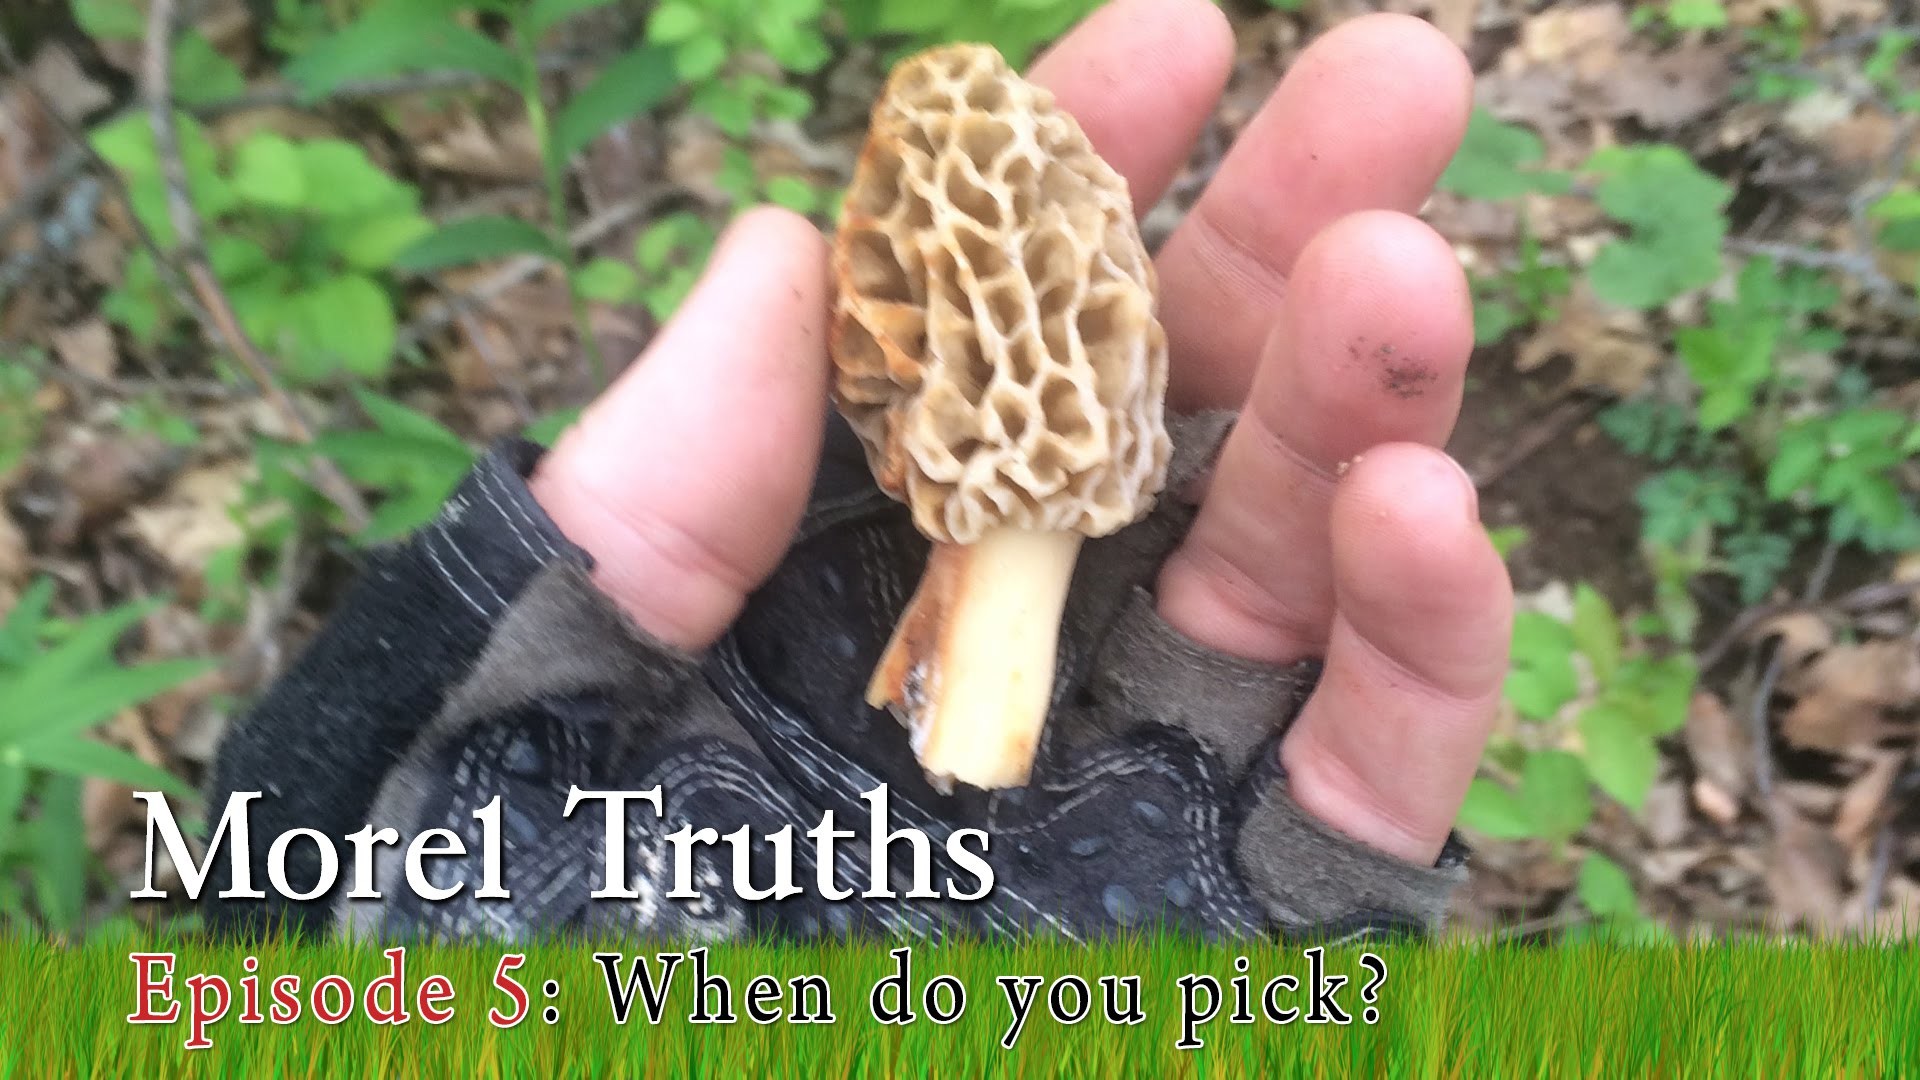 1920x1080 When should I pick Morel Mushrooms? - Morel Truths: Episode 5